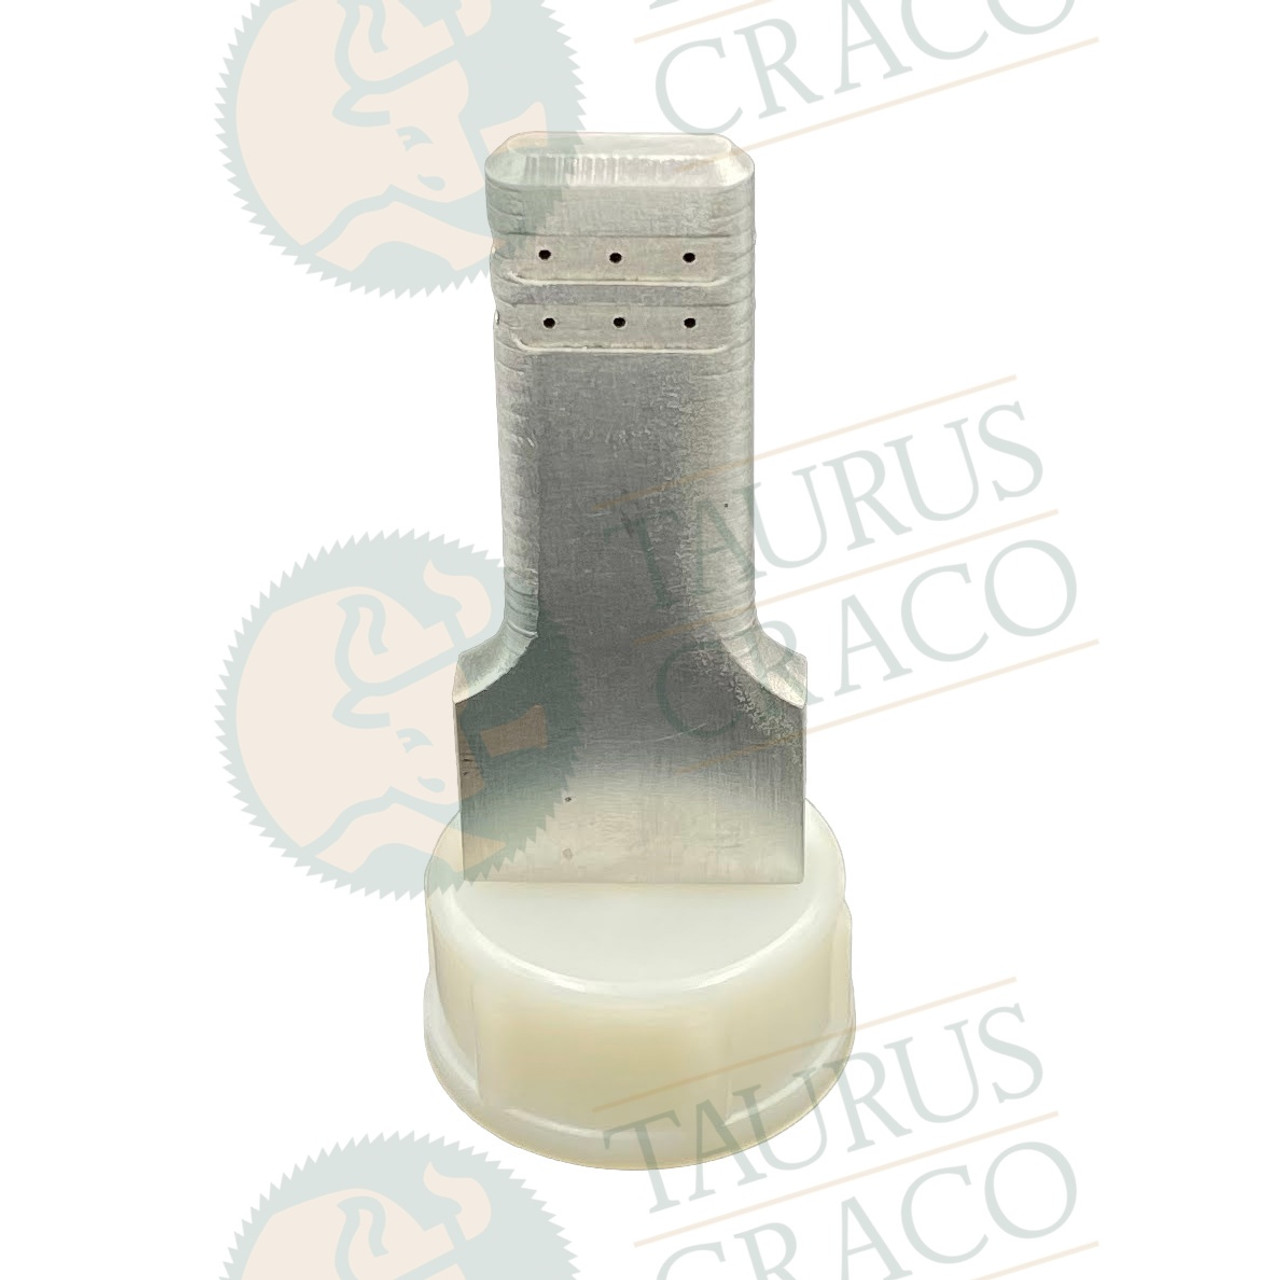 Image of Pizzi Domino (Festool) Glue Attachment 10mm X 24mm x 50mm (Piz D123F)